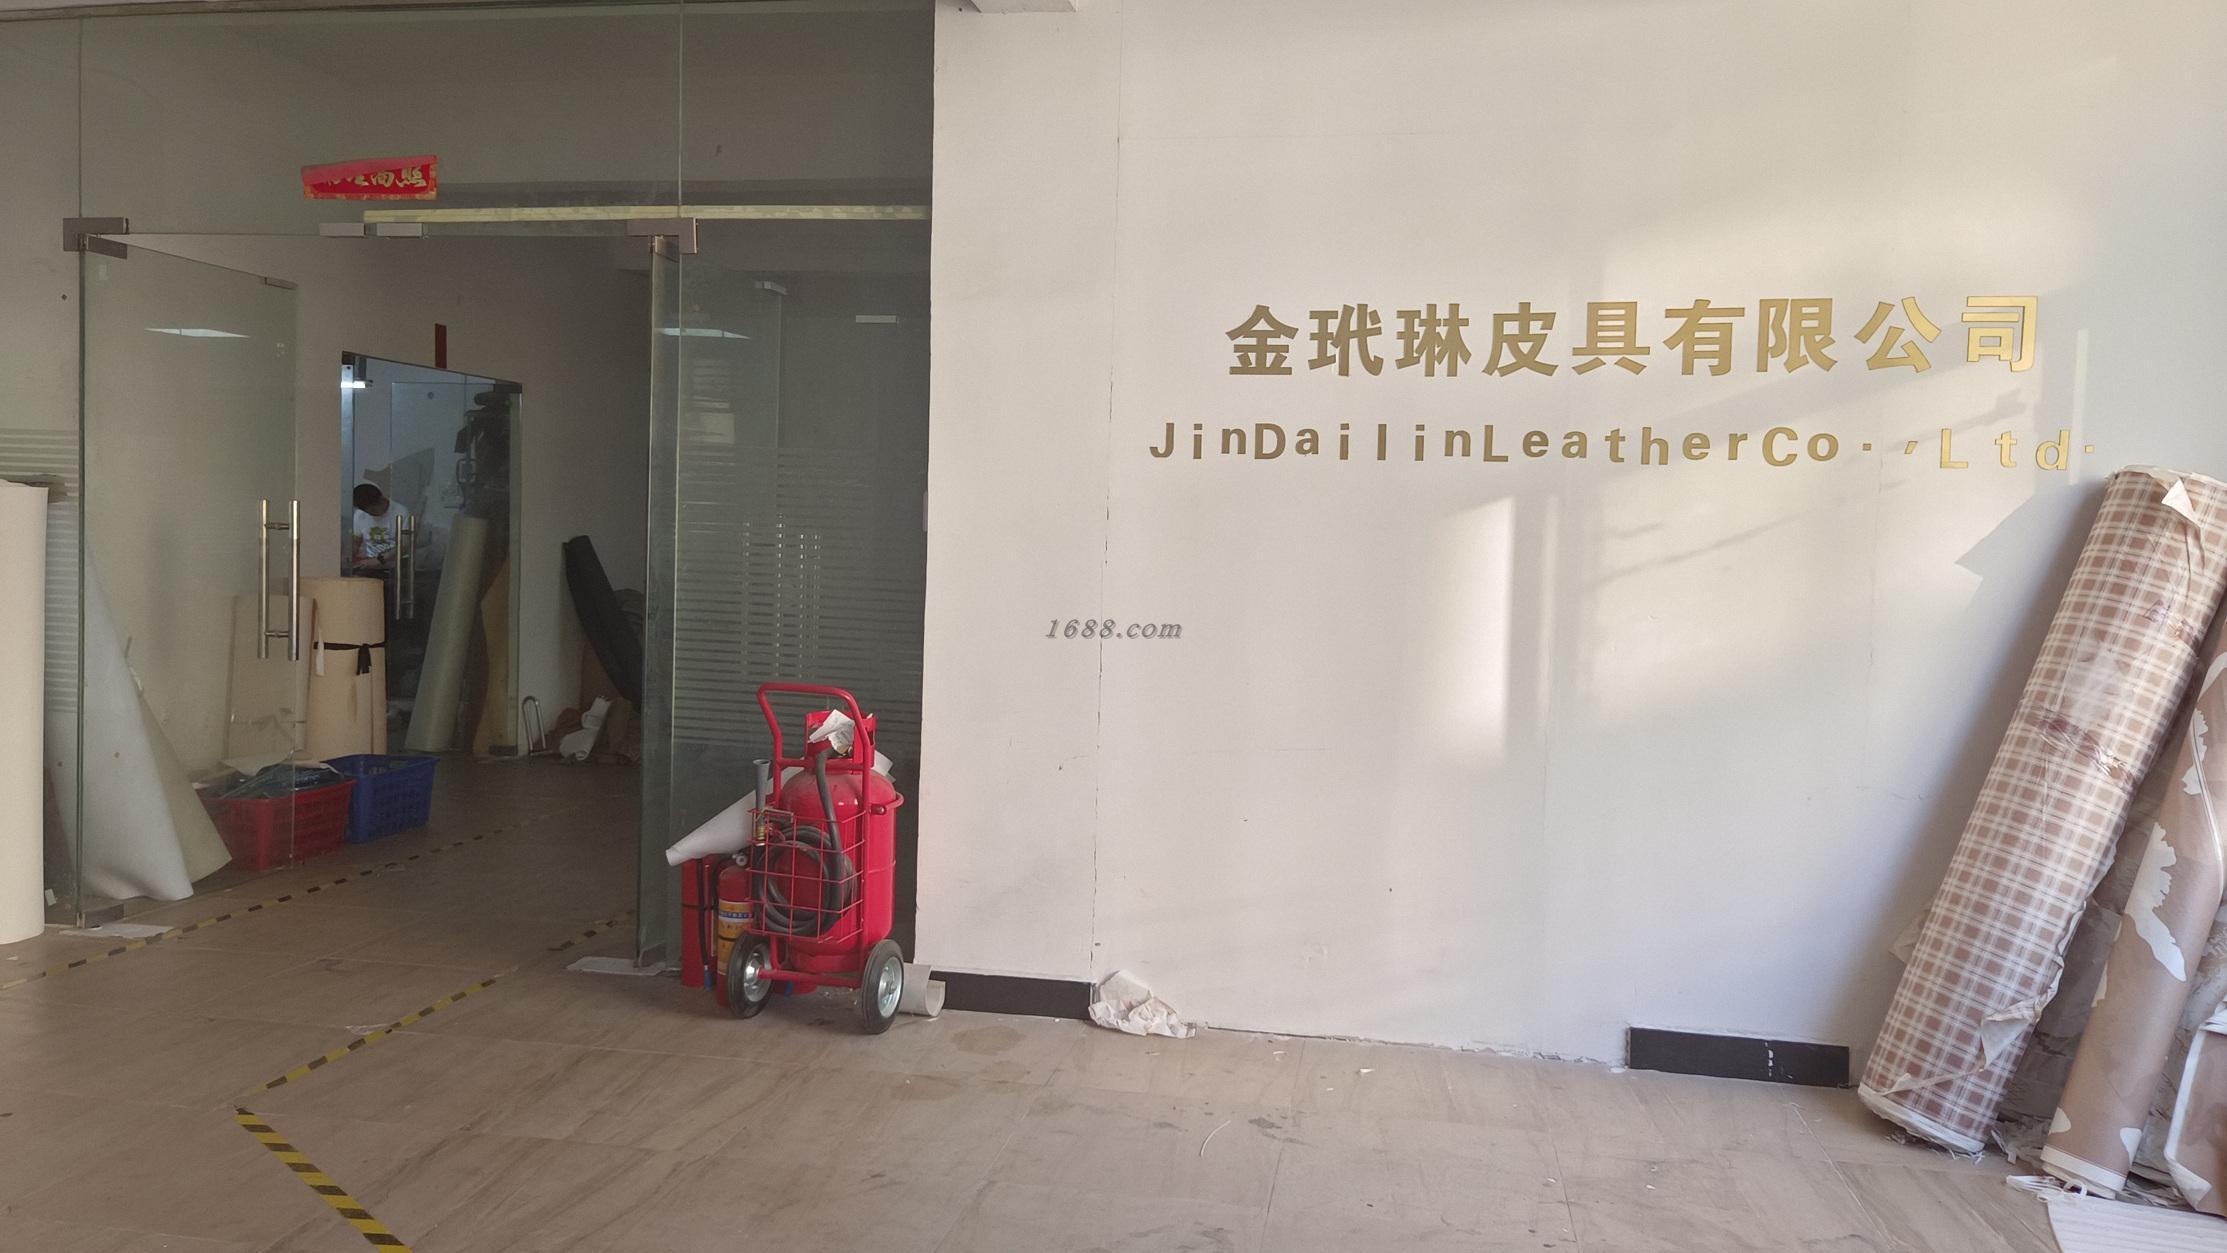   Guangzhou Jindailin Leather Co., Ltd